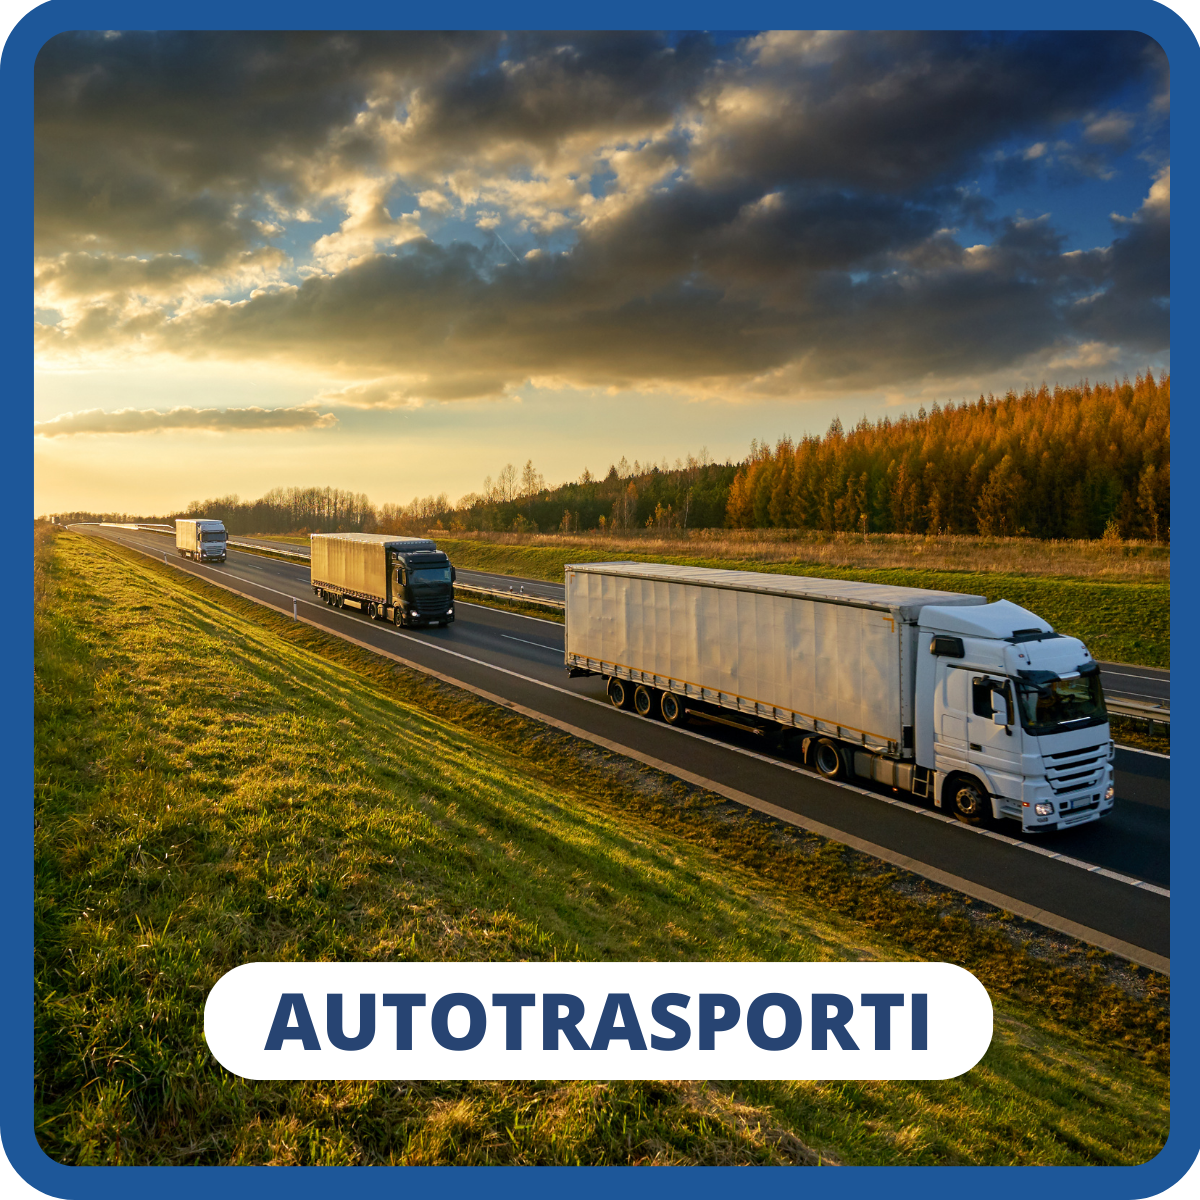 Autotrasporti incentivi veicoli ecologici detrazioni deduzioni CCNL logistica spedizioni trasporti bonus gasolio accise